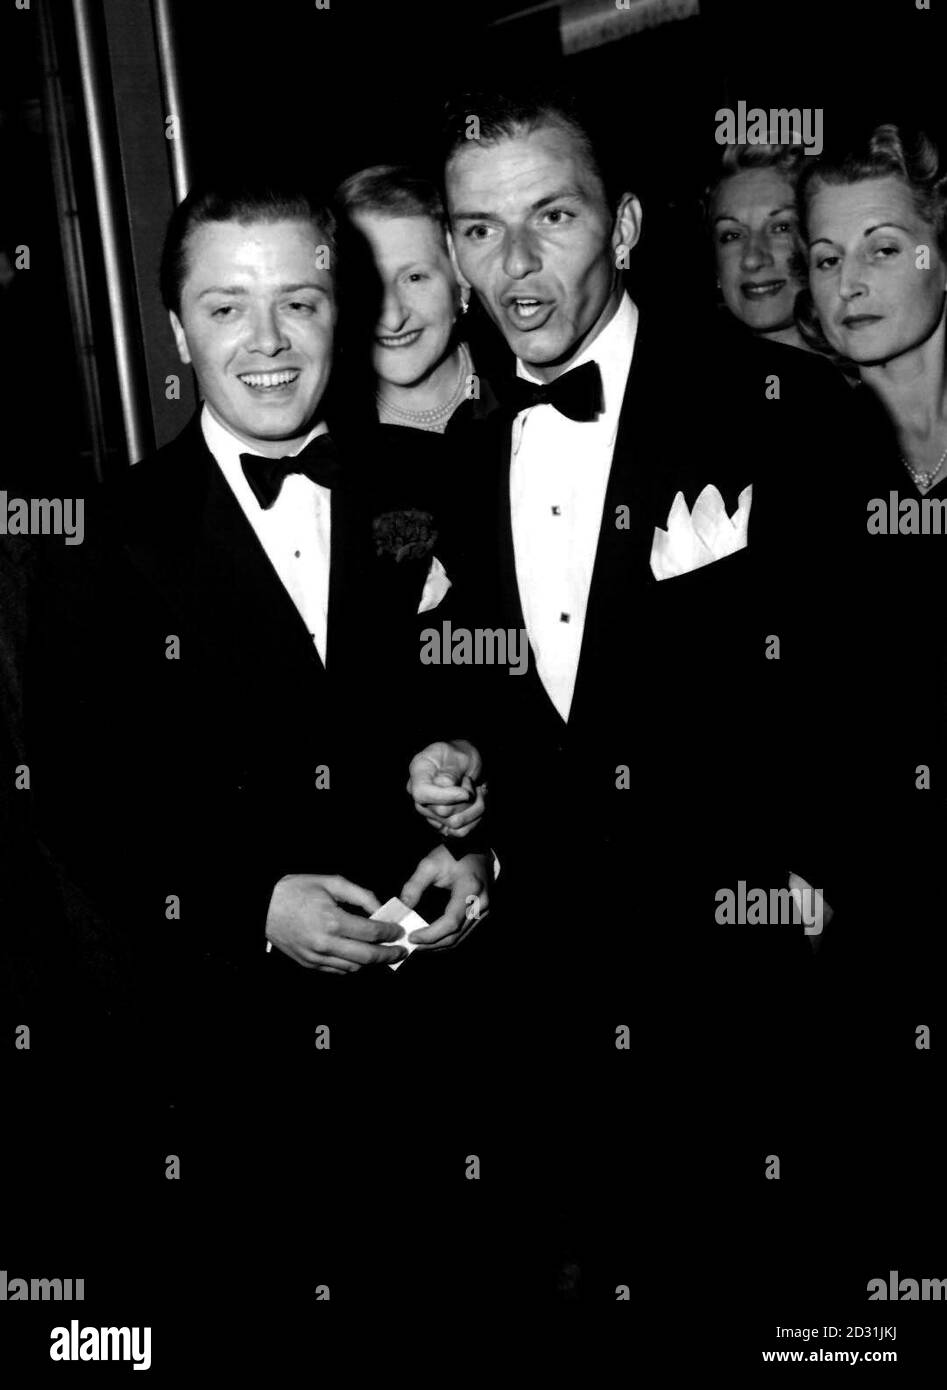 1950: Mentre la star del cinema britannico Richard Attendborough (l) sembra divertita, Frank Sinatra, il cricchiolio americano, sembra nel mezzo di uno di quei suoi devastanti numeri. L'occasione è la prima notte del musical di Noel Coward 'Ace of Clubs' al Cambridge Theatre di Londra. Foto Stock